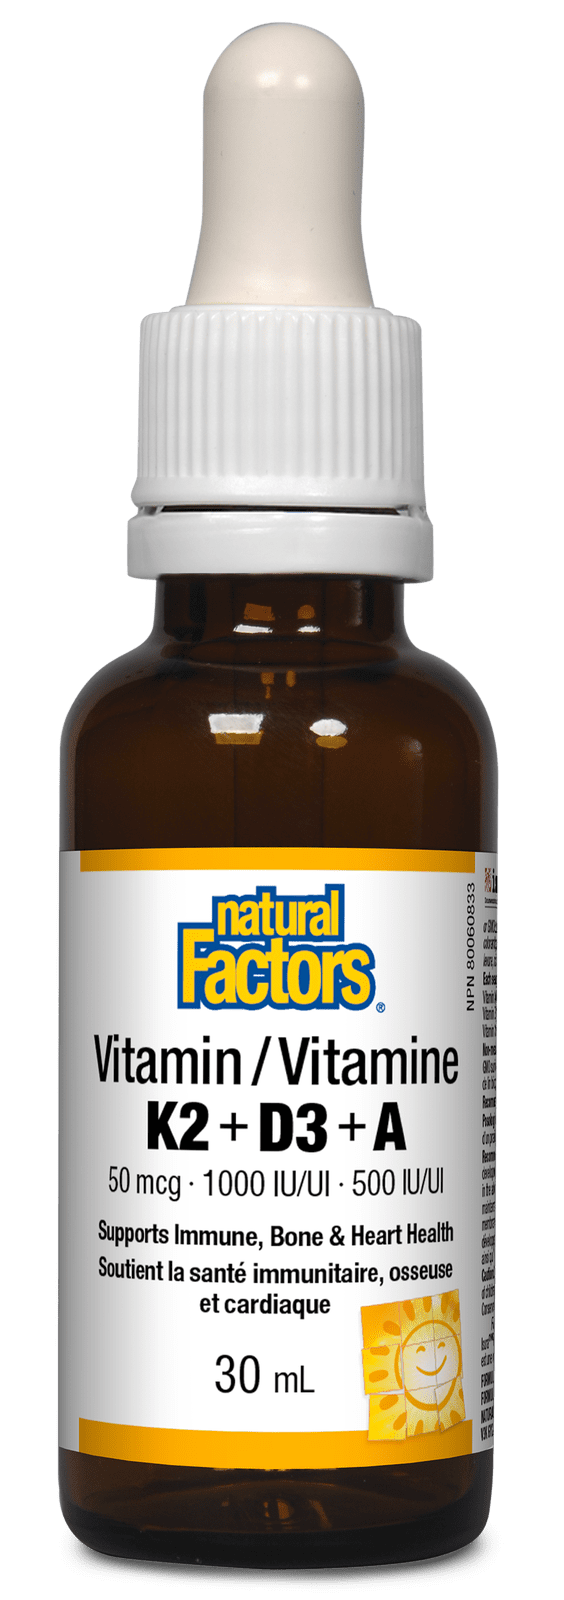 Natural Factors Vitamin K2 D3 + A 30mL Image 1